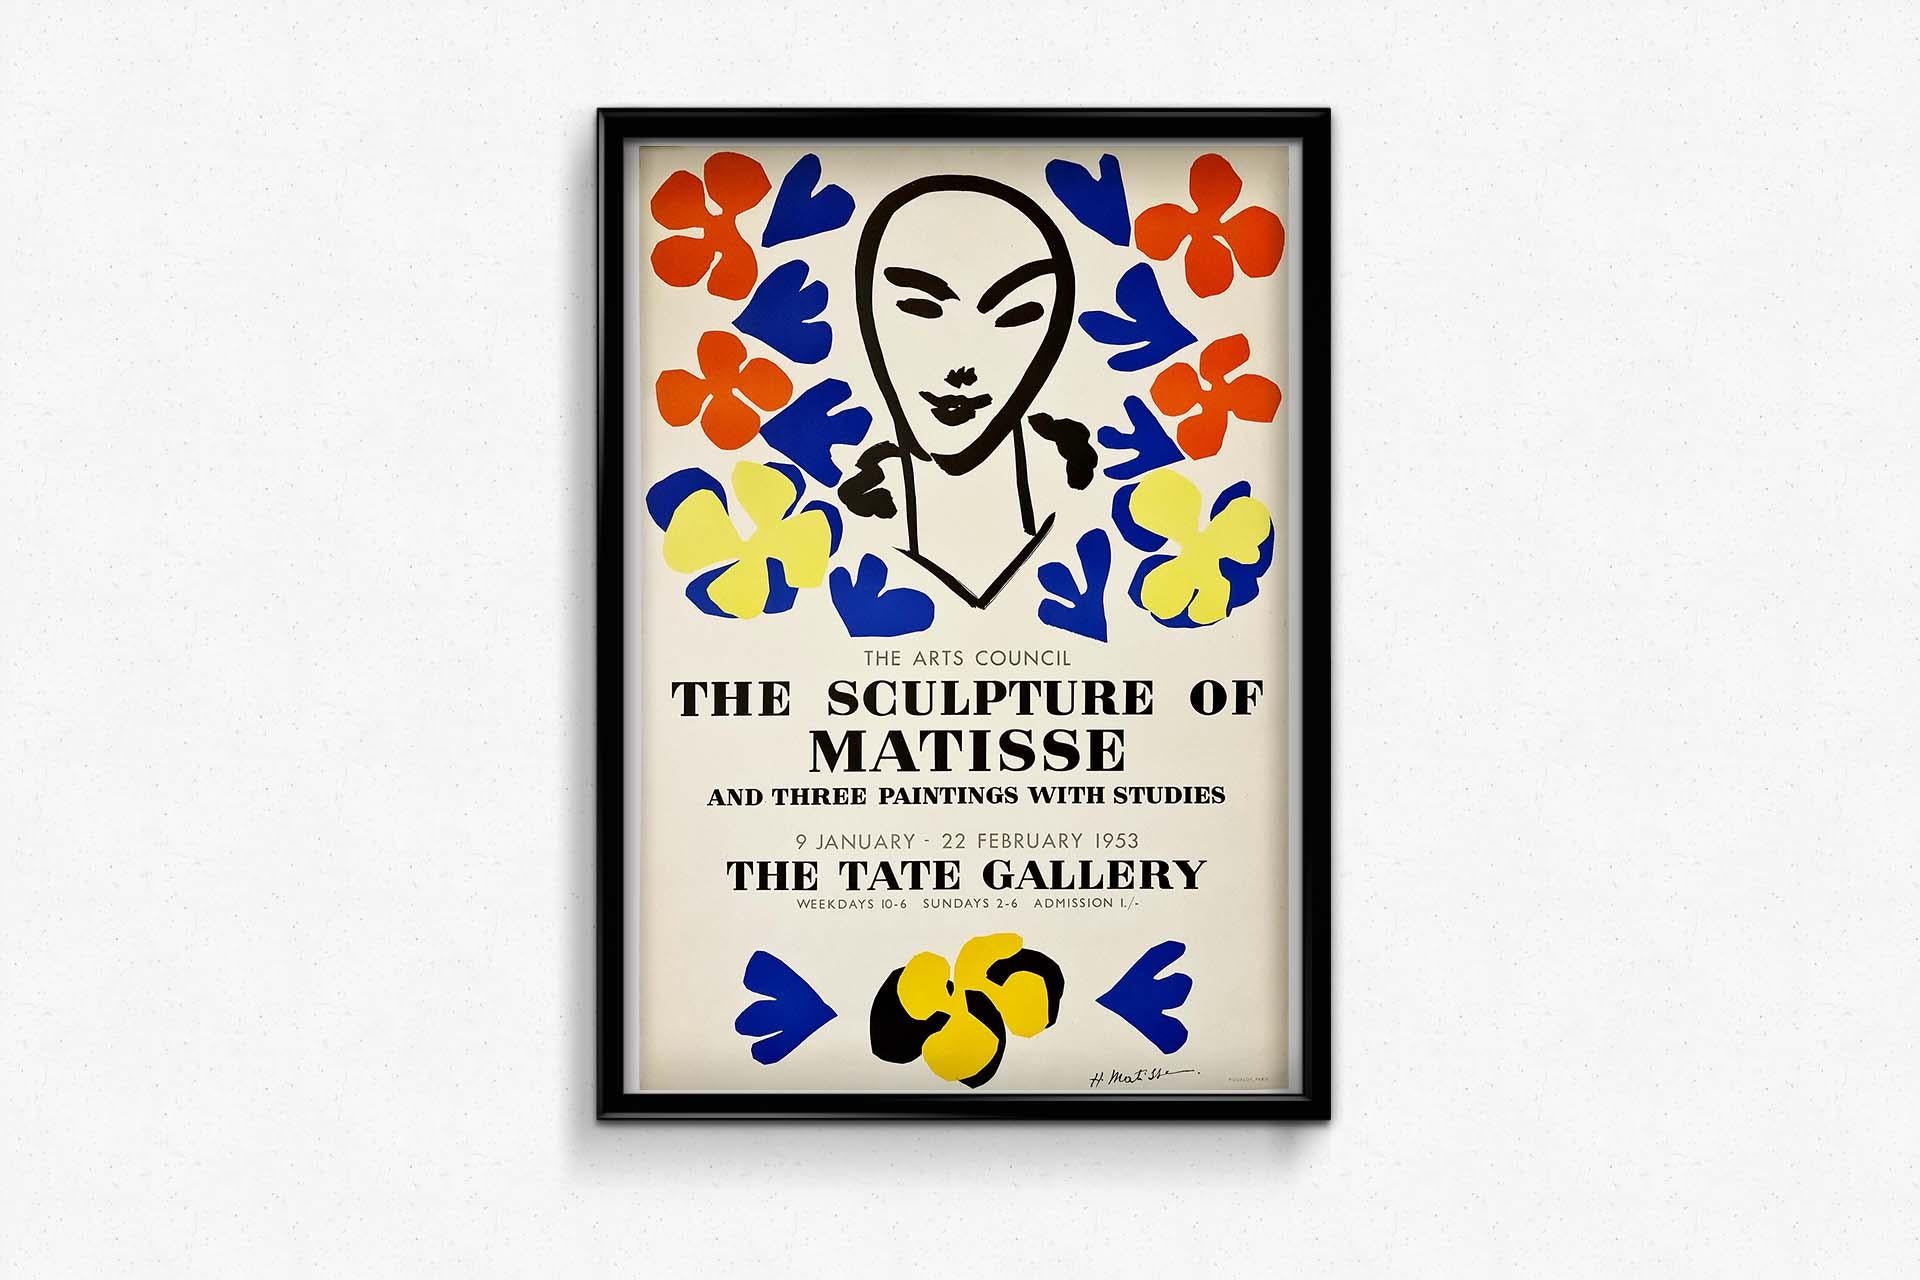 Lithographie imprimée par Mourlot pour une exposition de sculptures de Matisse à la Tate Gallery.
Les affiches d'exposition sont un excellent moyen de collectionner une pièce d'histoire de l'art. De nombreux artistes, dont Henri Matisse, sont